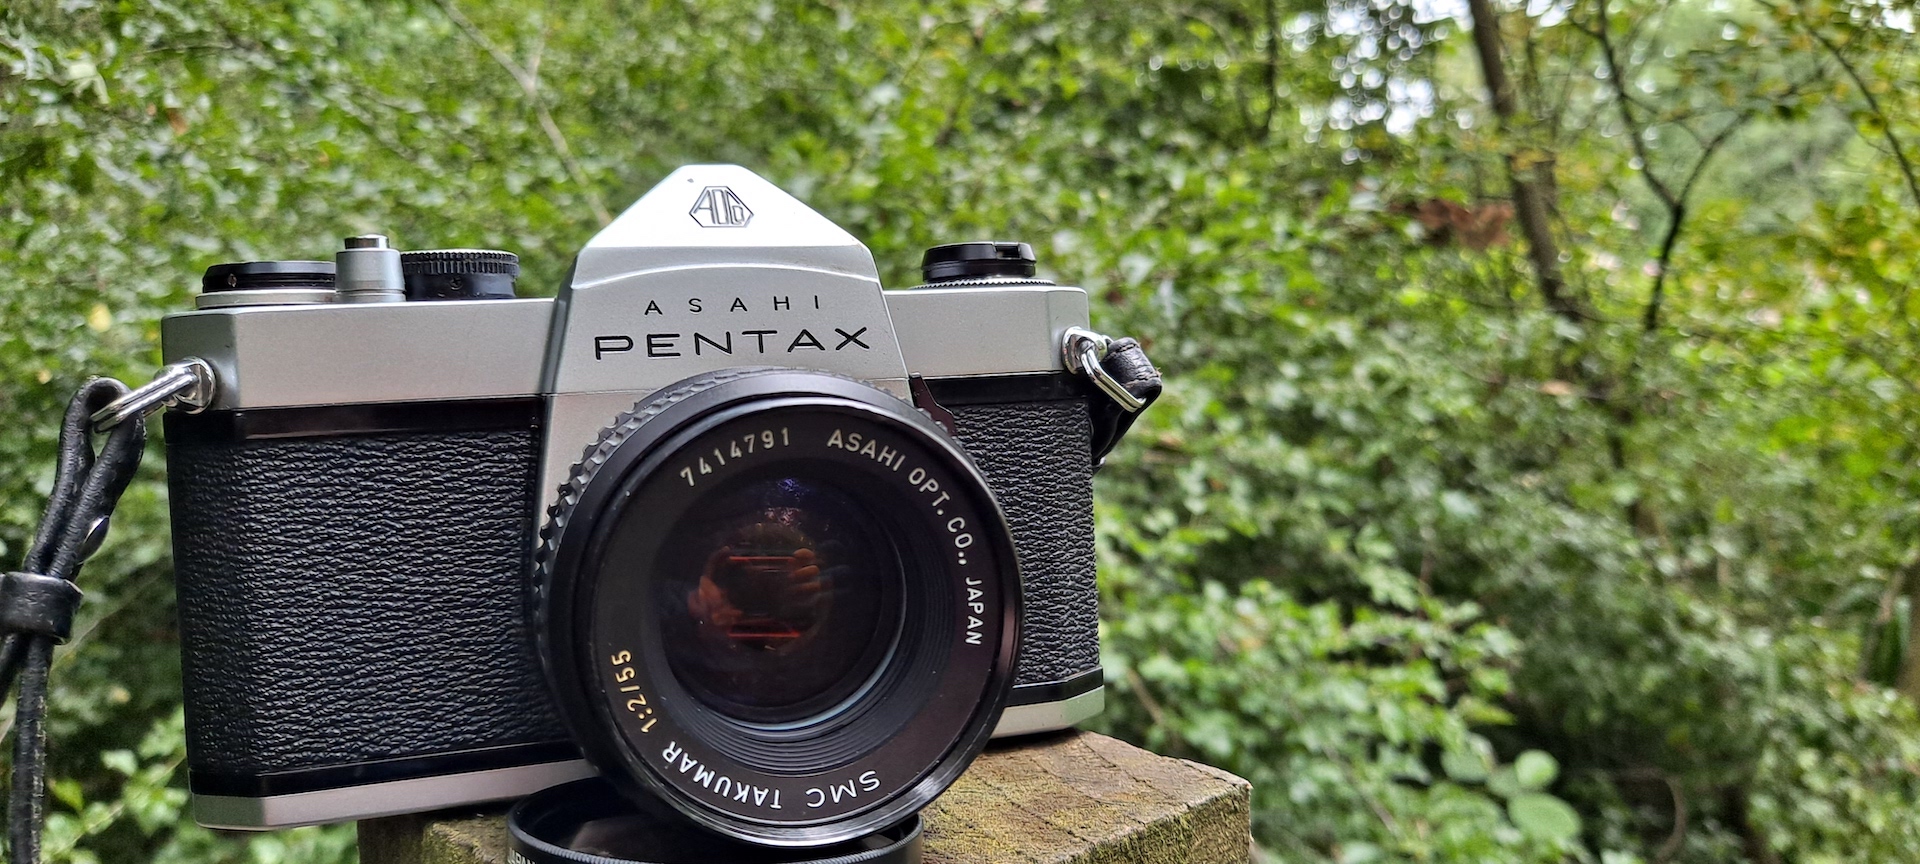 Pentax Spotmatic SP1000 (Asahi) – Camera Go Camera